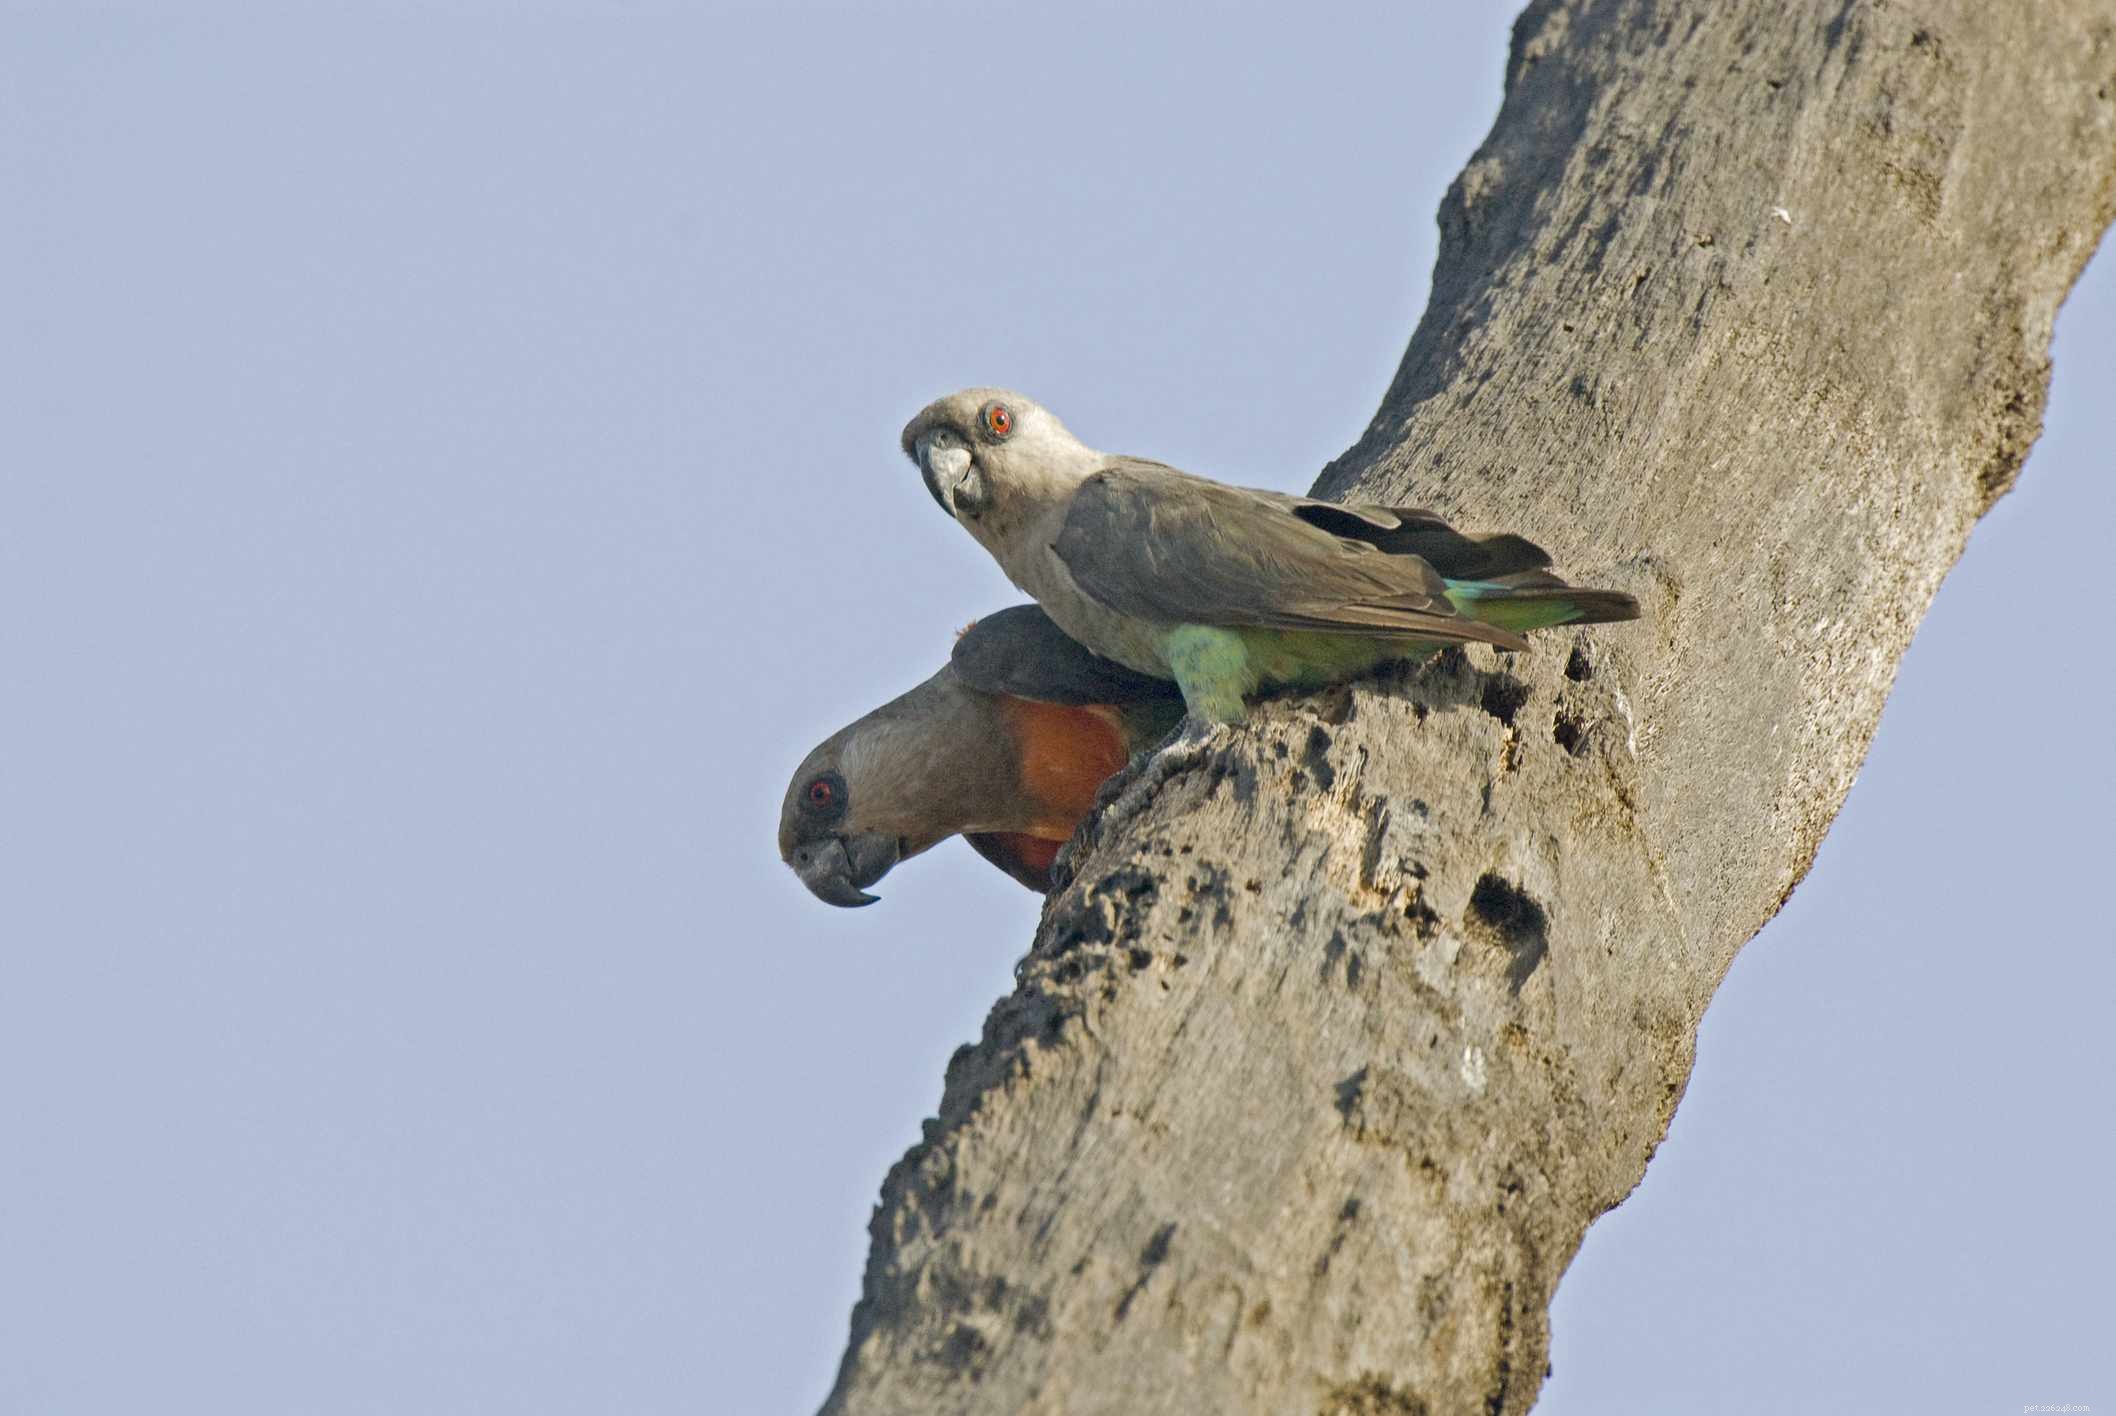 Papagaio-de-barriga-vermelha:Perfil da espécie de pássaro